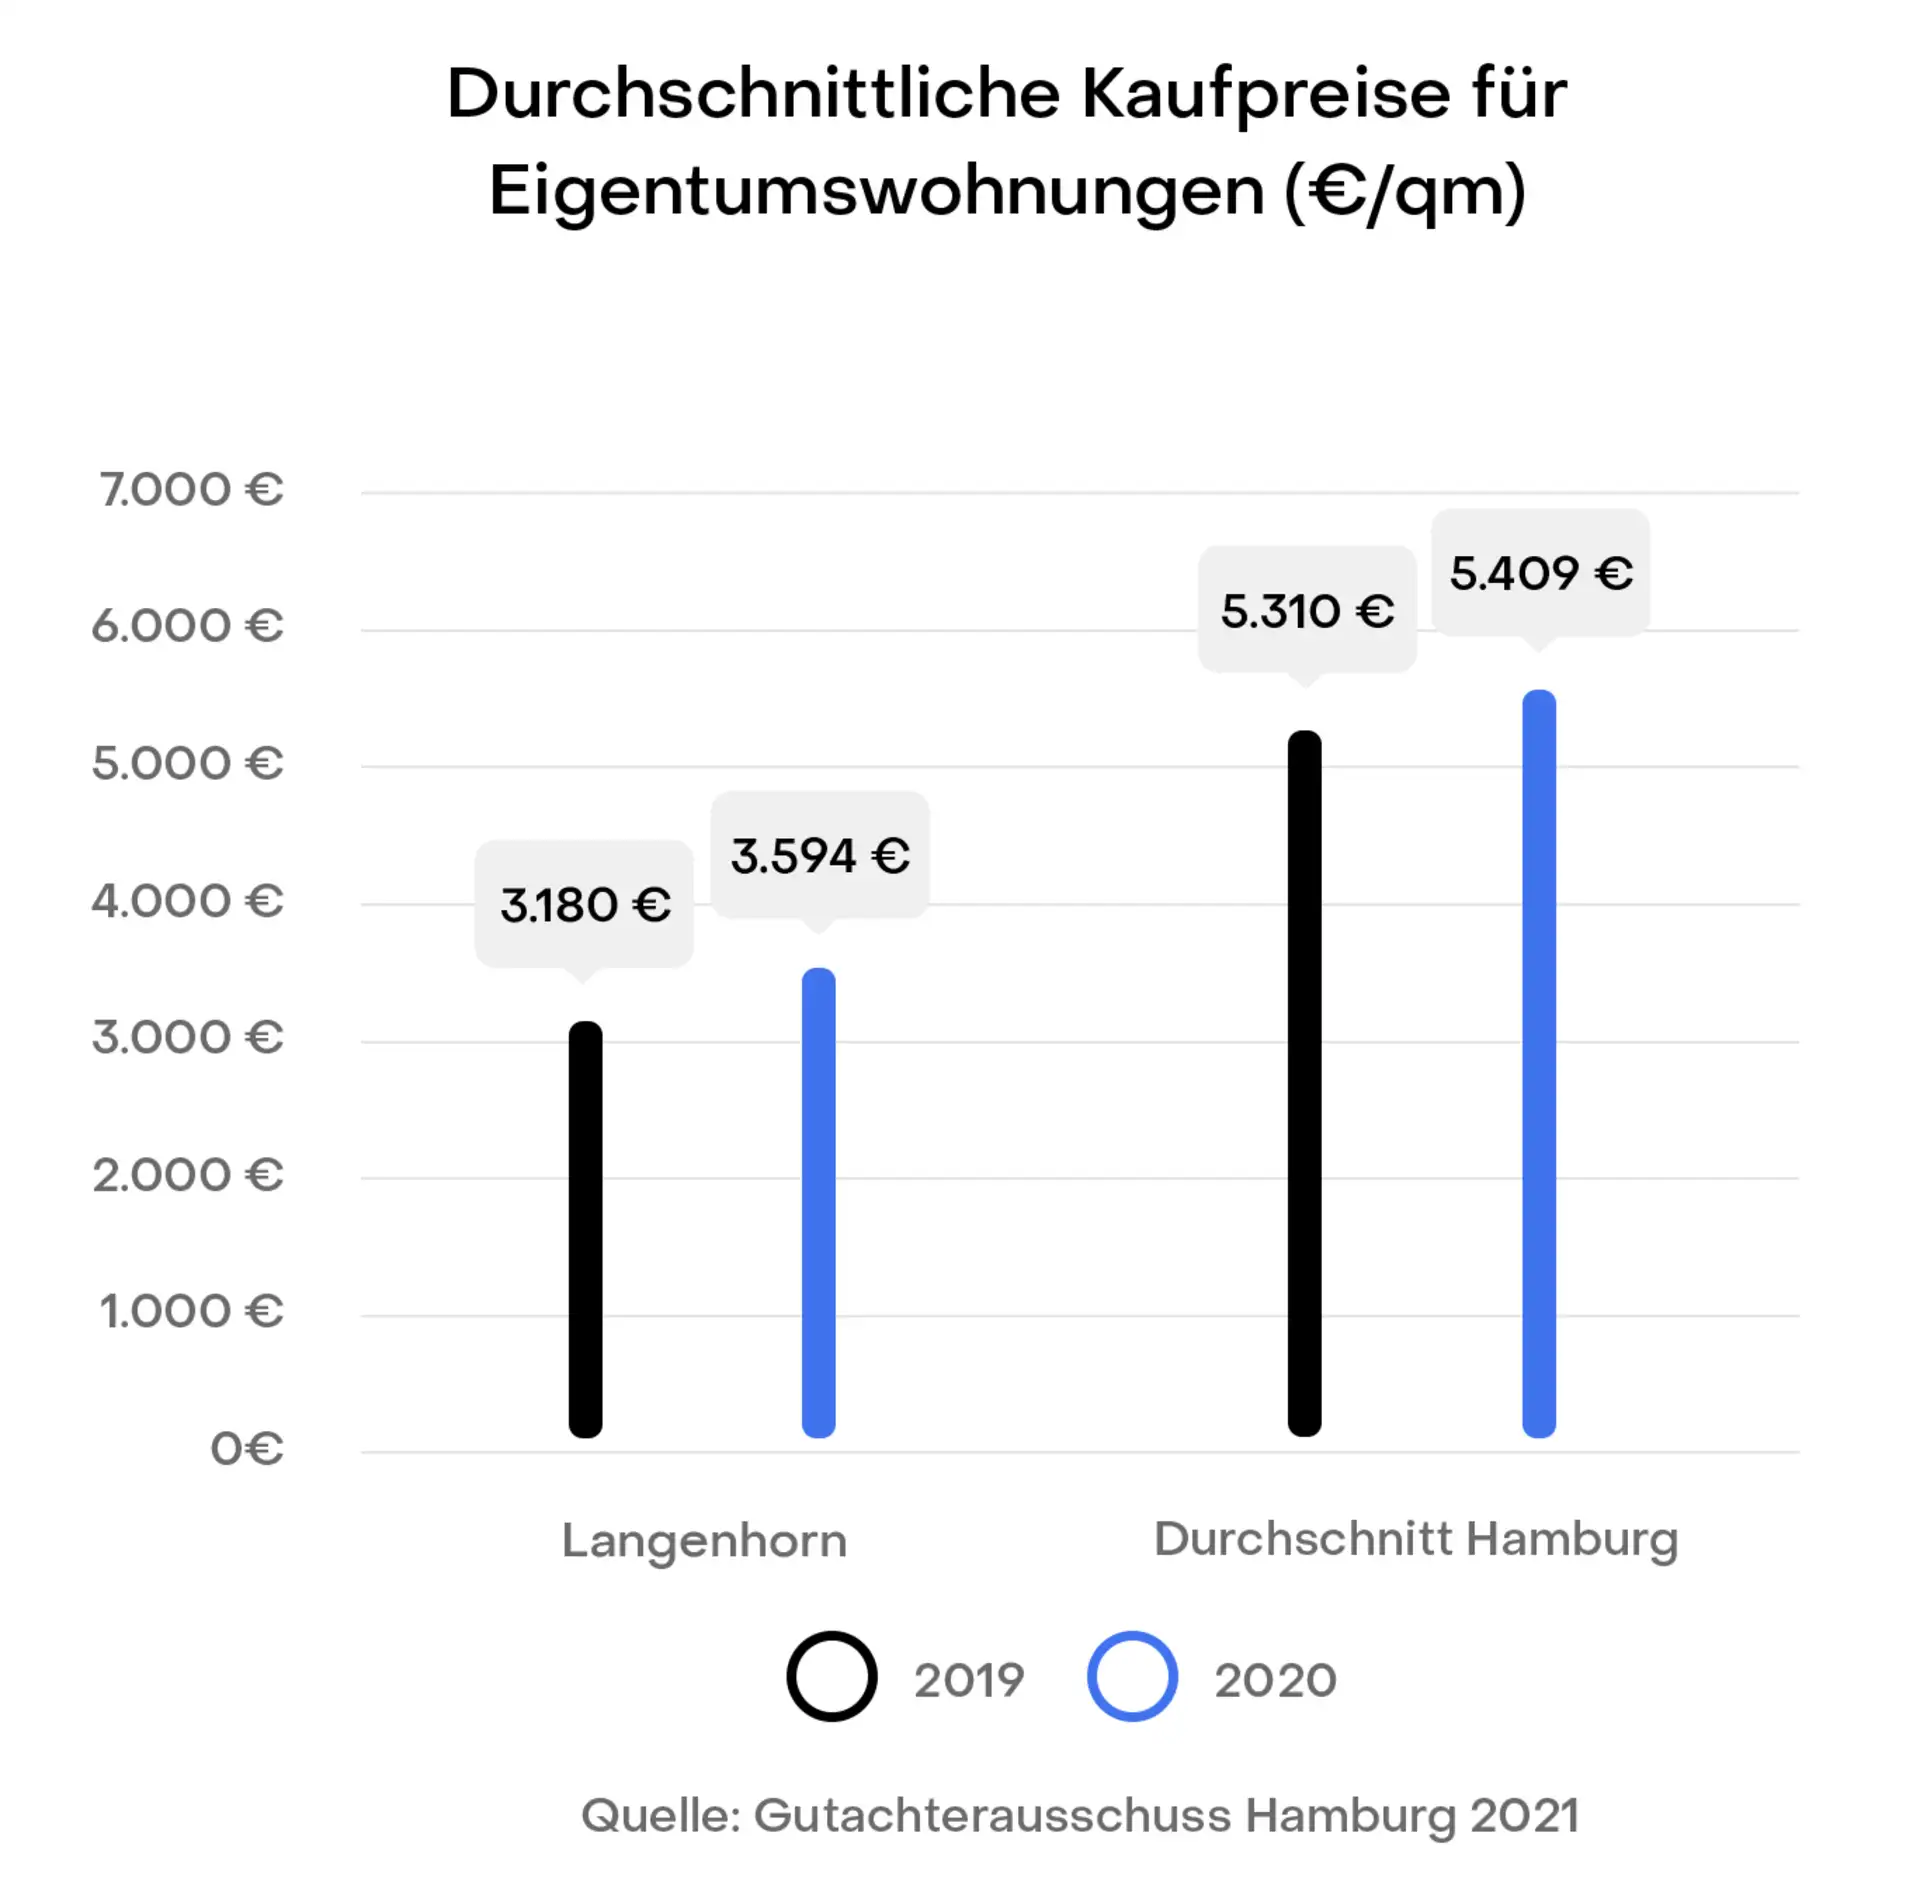 Hamburg Langenhorn Preisentwicklung Immobilien Kaufpreise
Gutachterausschuss